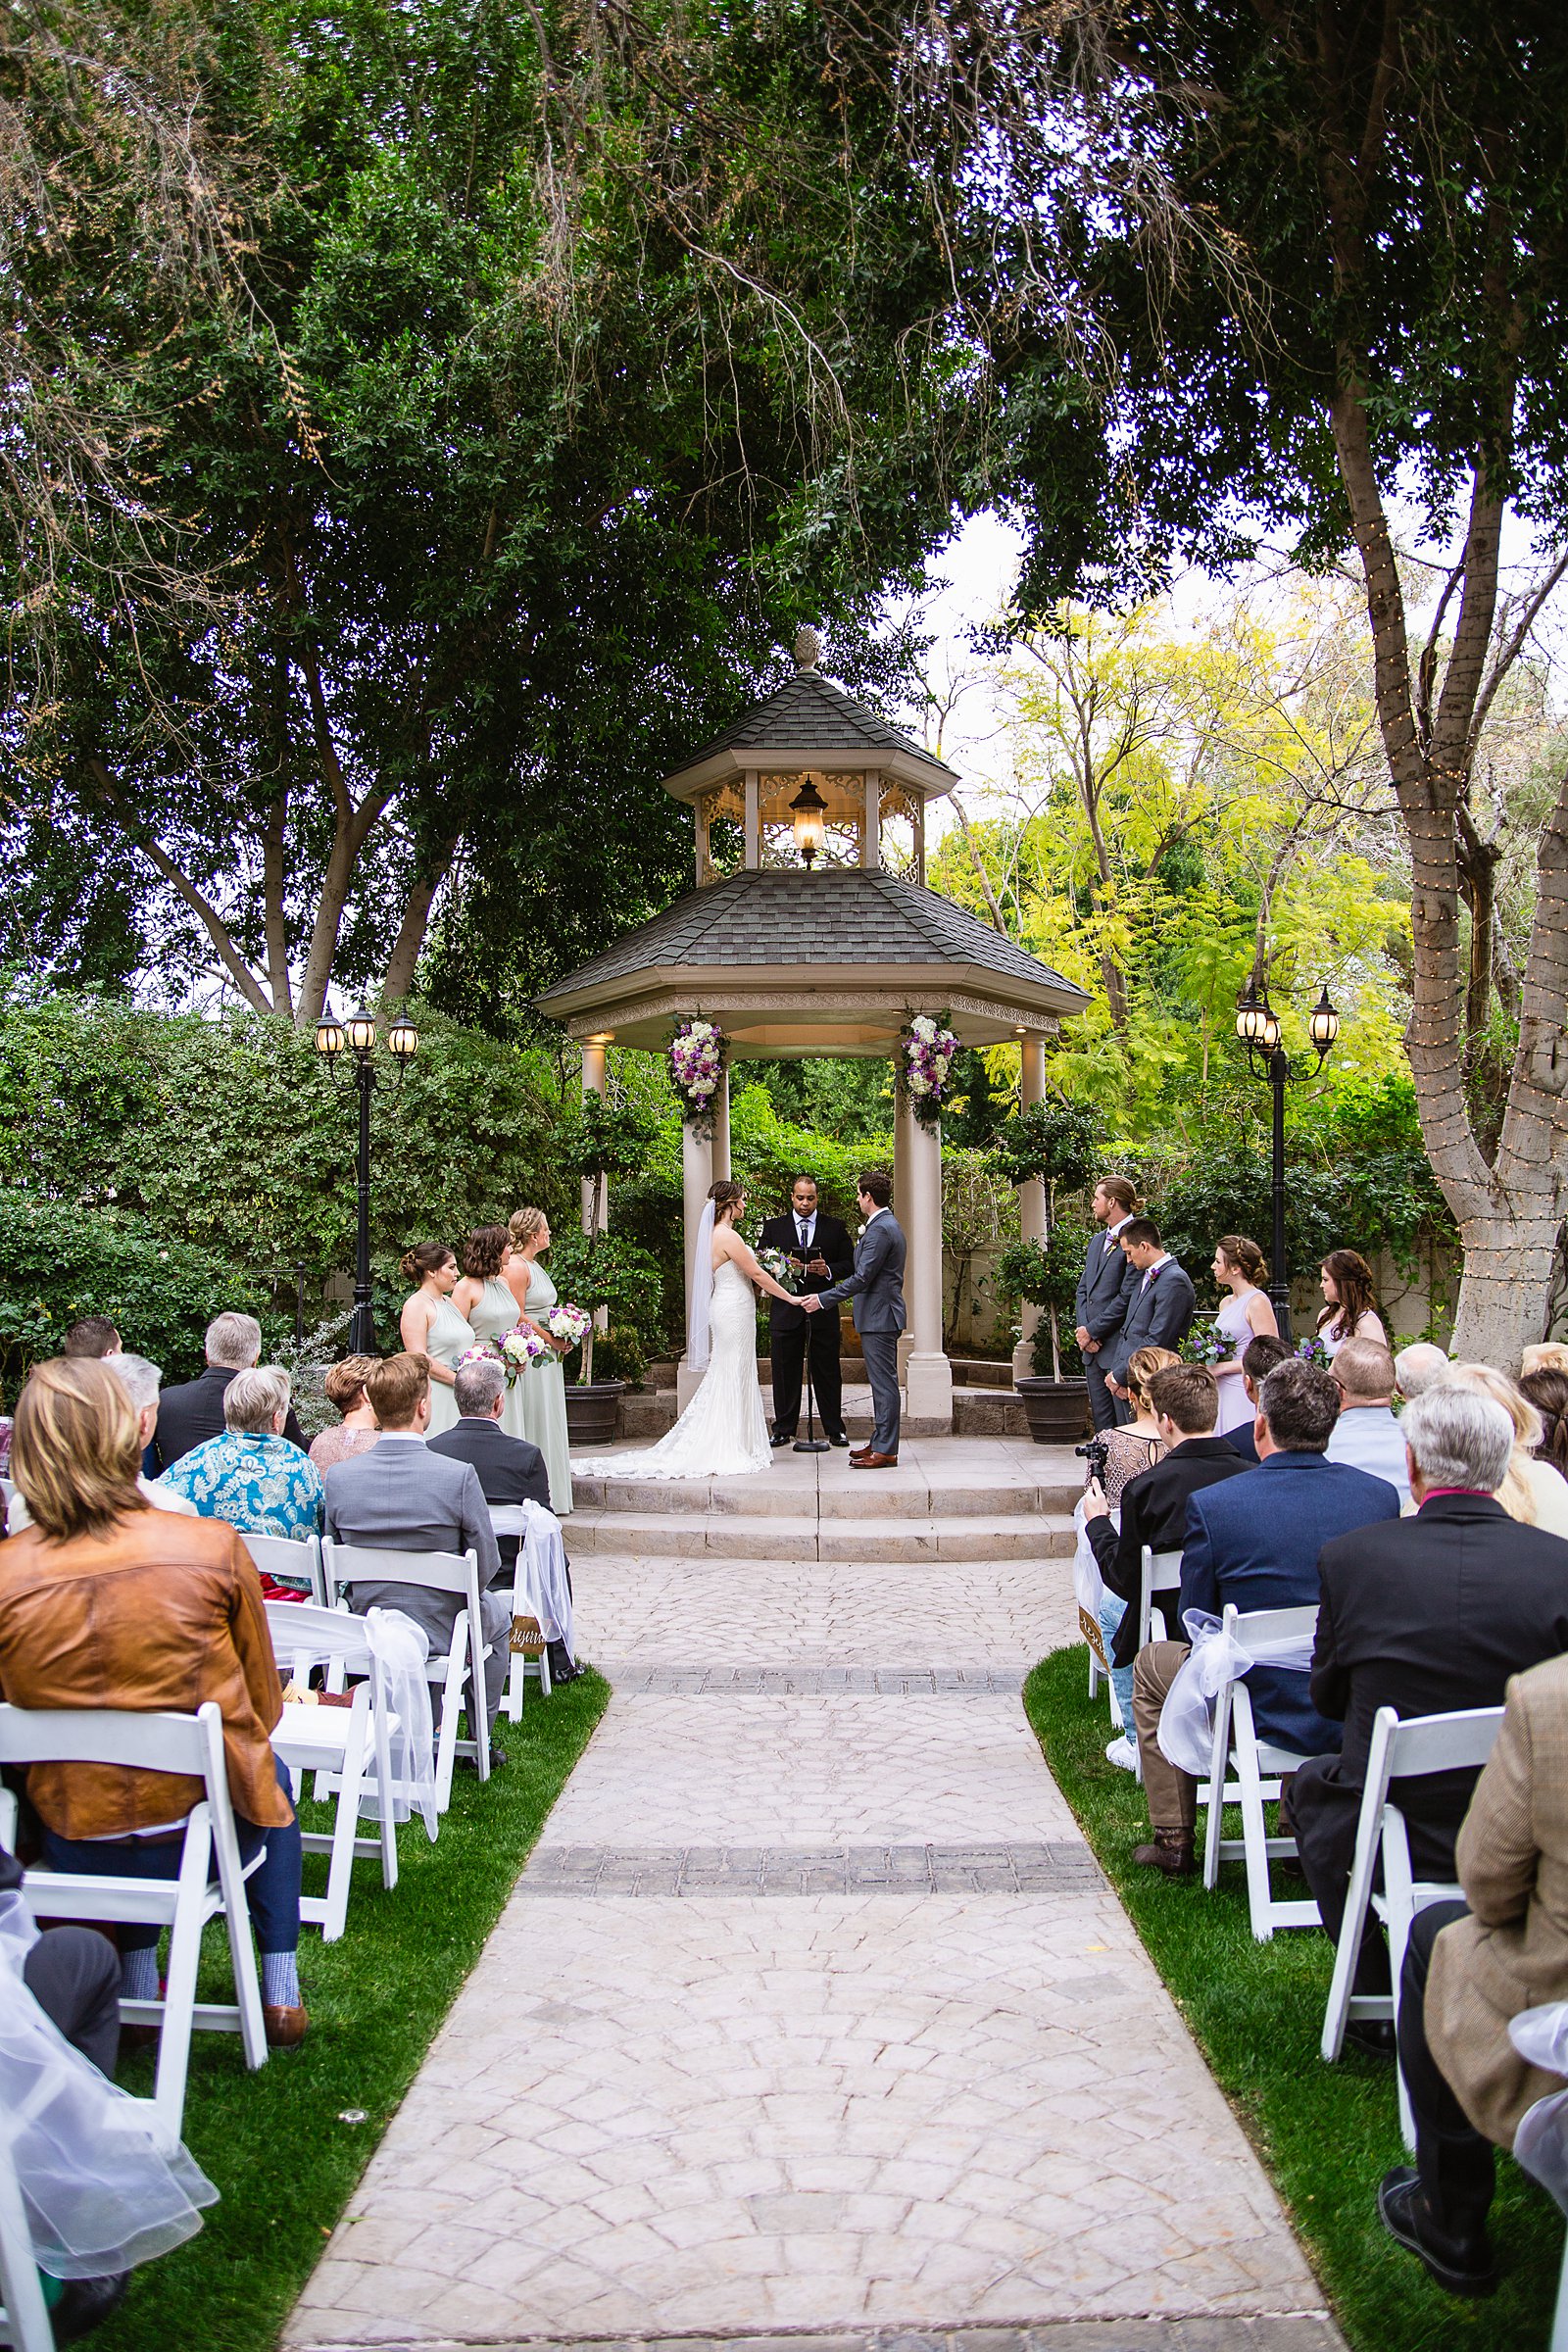 Wedding ceremony at The Wright House by Arizona wedding photographer PMA Photography.